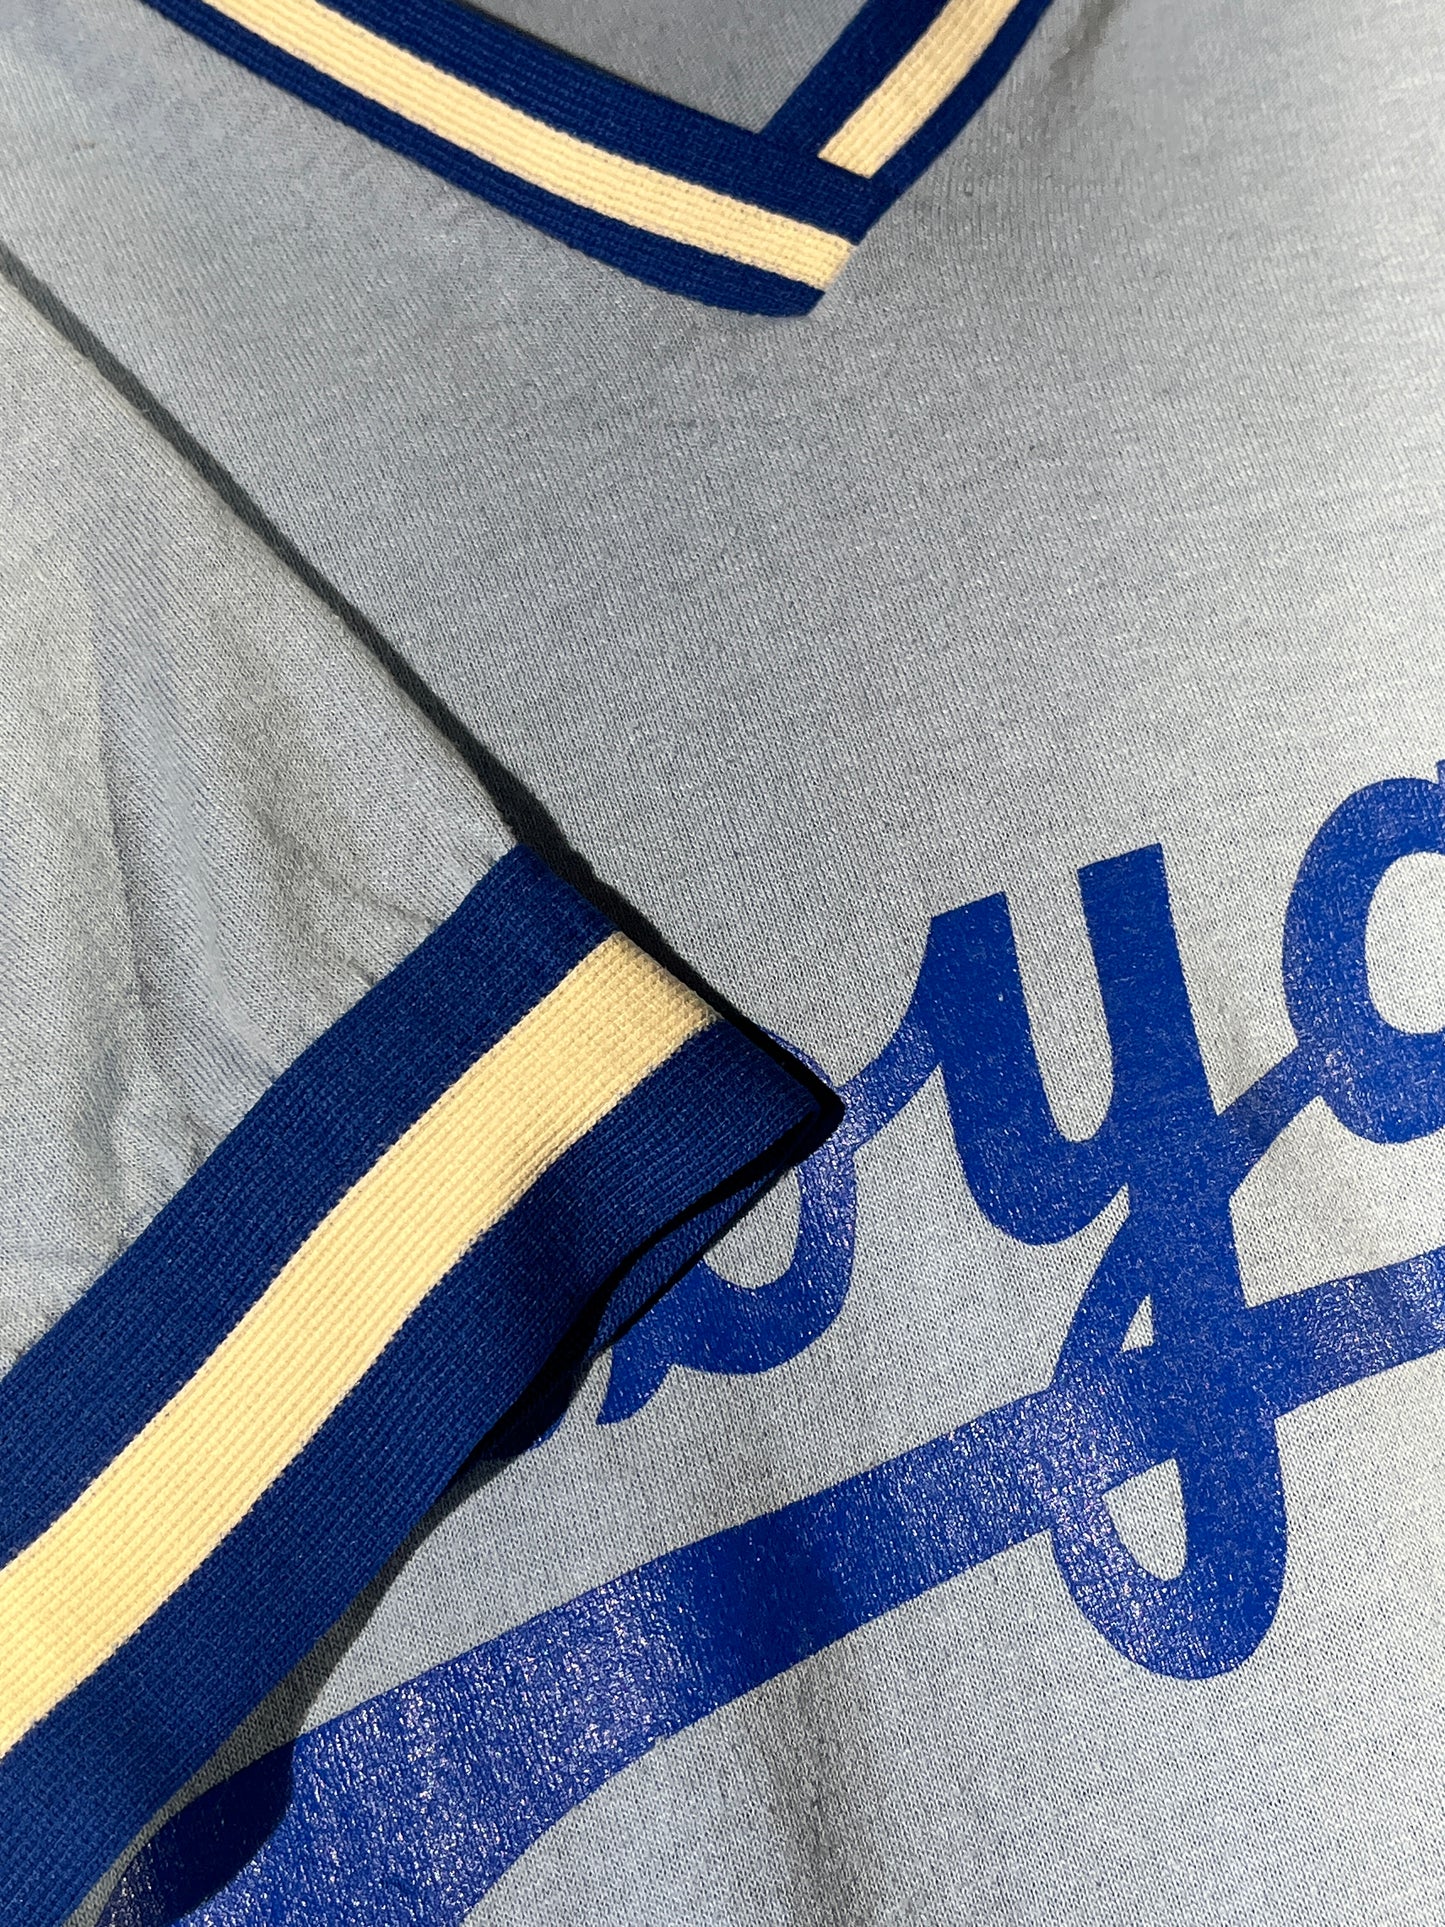 Vintage Royals Jersey Top T-Shirt Baseball Cut Kansas City MLB USA Made